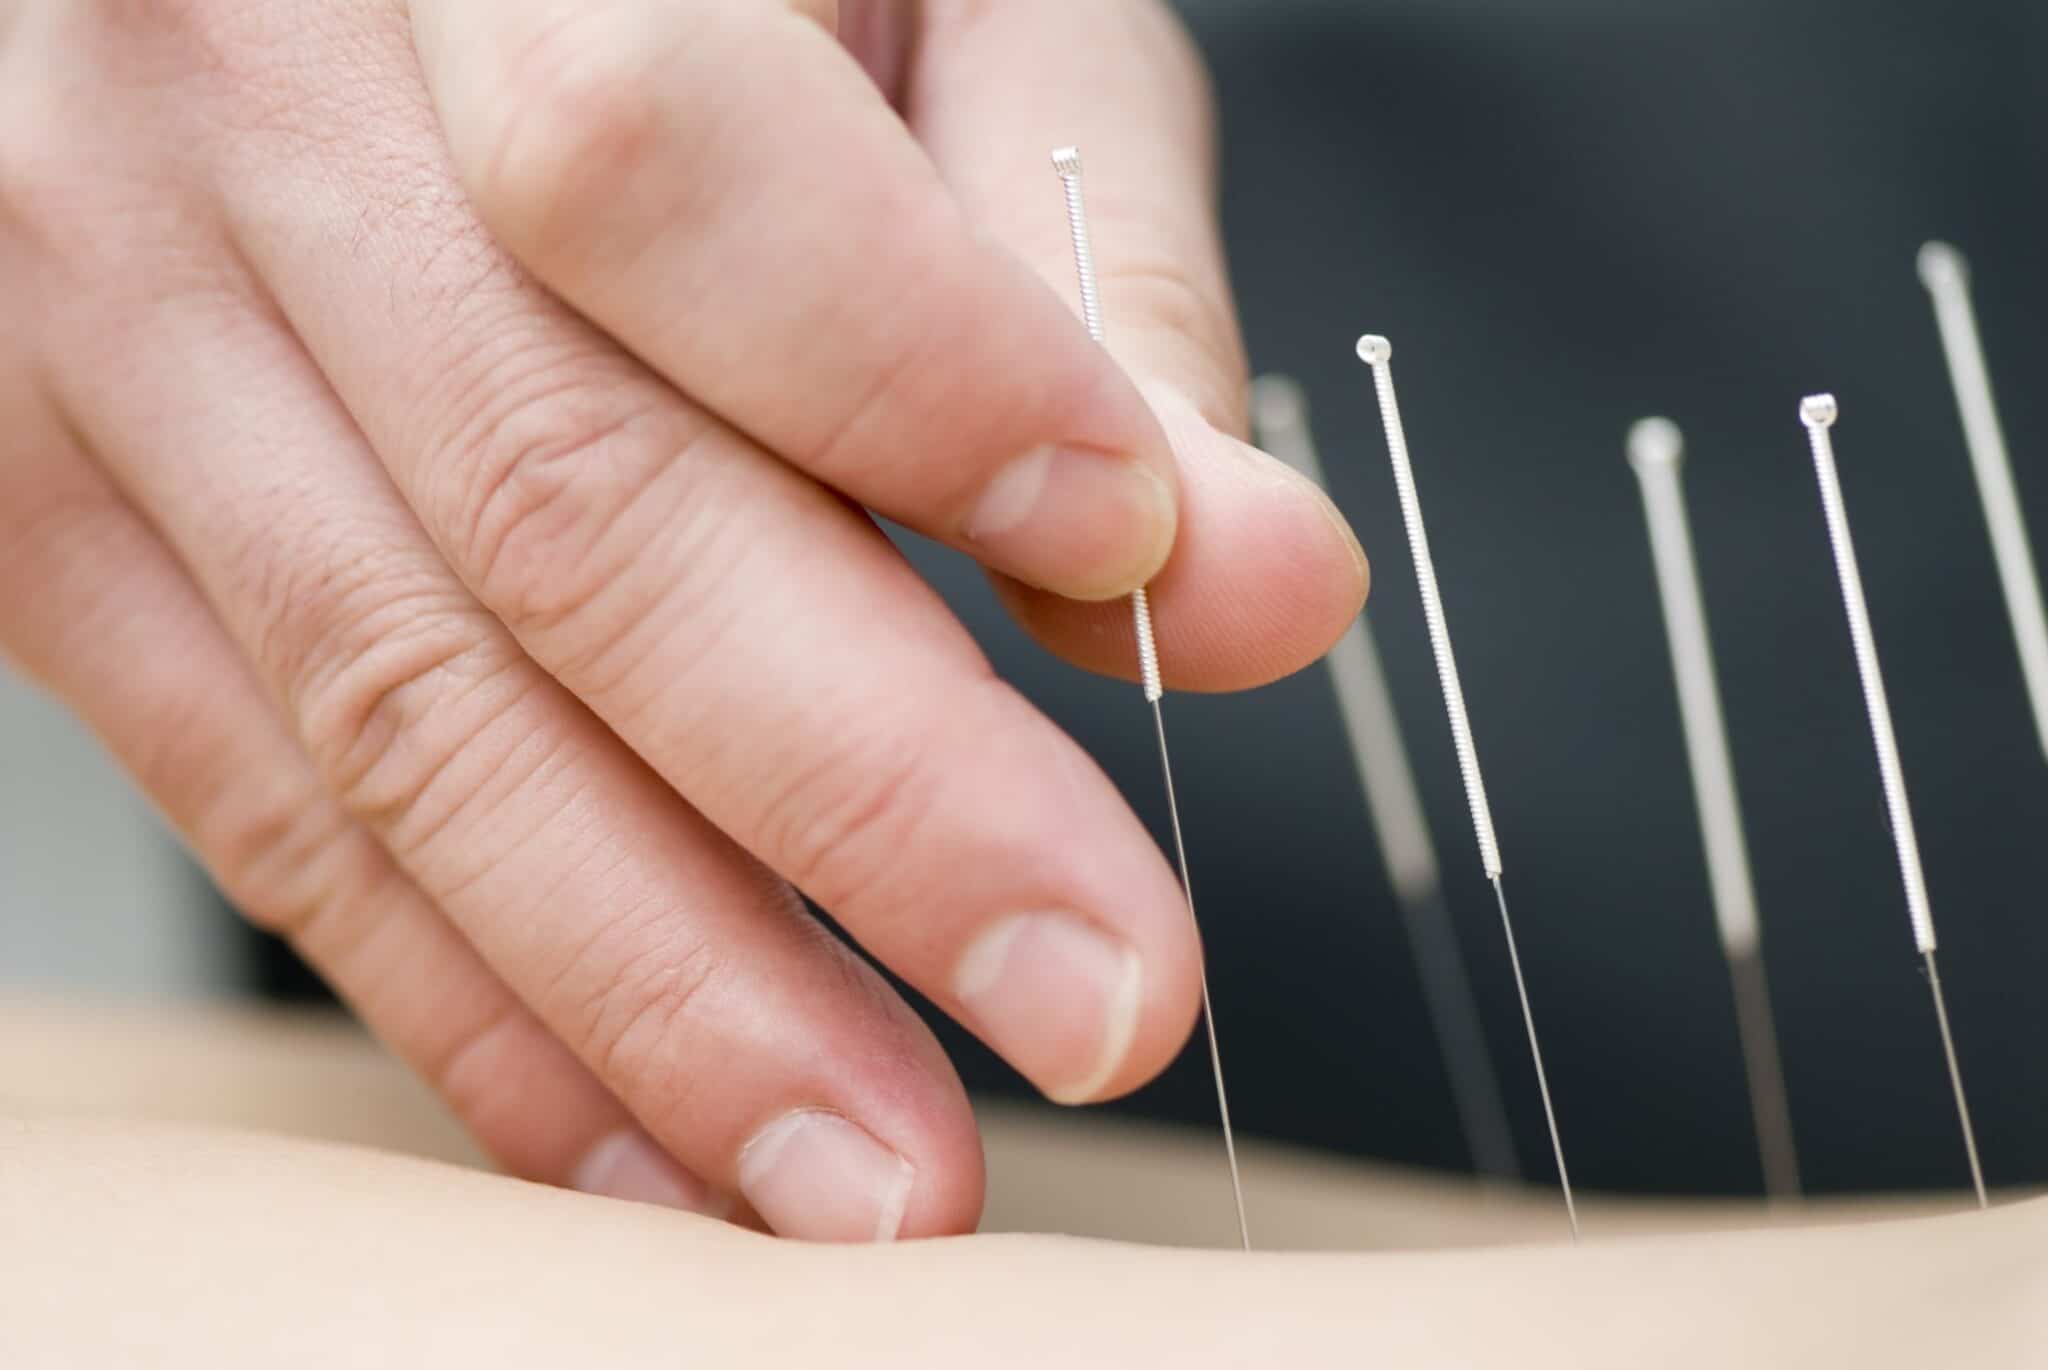 Indsættelse af akupunkturnåle i patient - tæt på